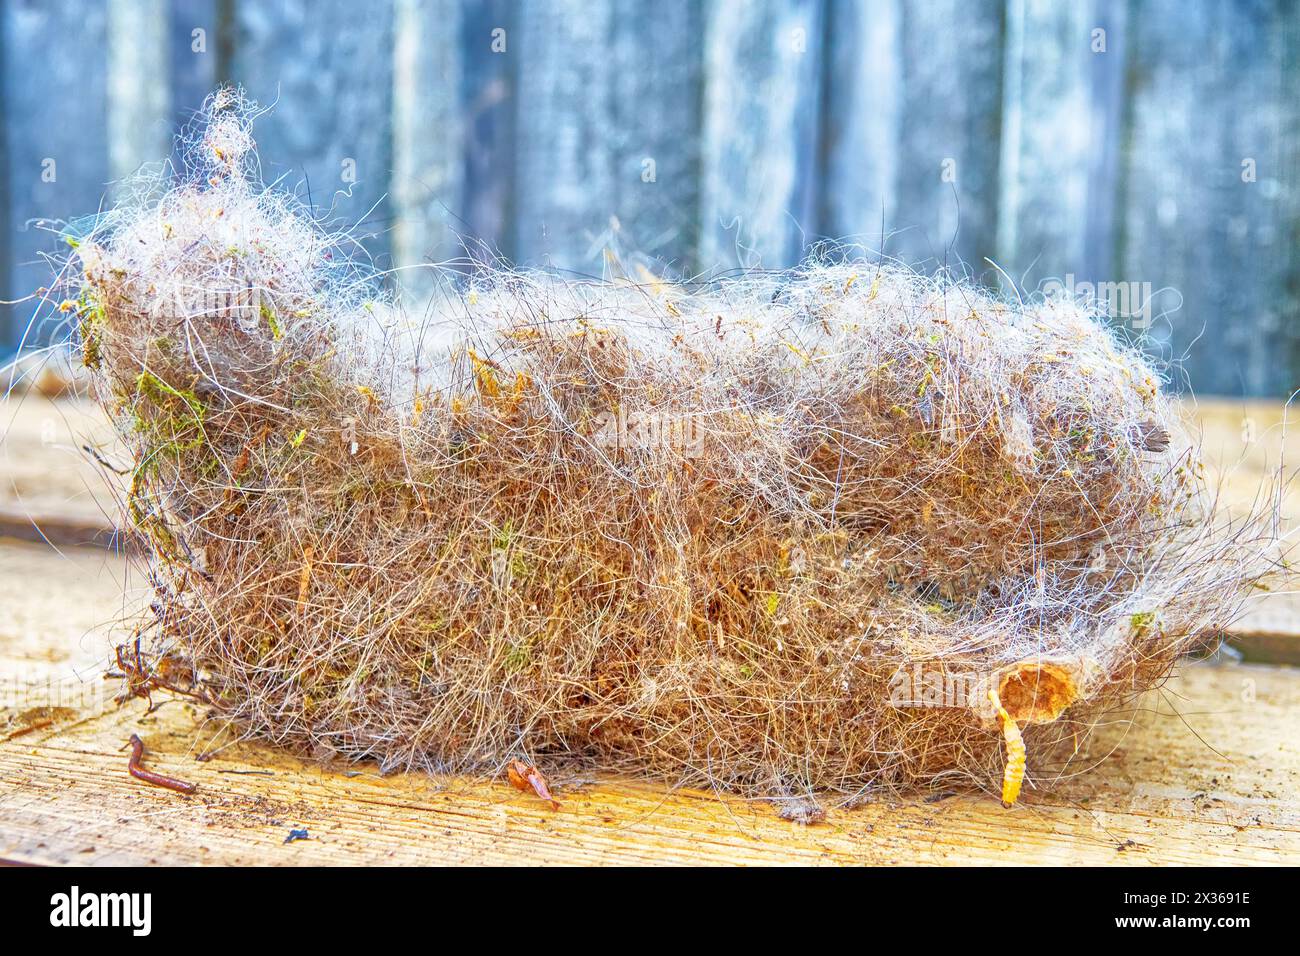 Das Nest der Großen Titte (Parus Major), das aus dem Vogelhaus gewonnen wurde, nachdem die Küken geflogen waren. Es besteht aus dünnen Wurzeln, Gras, Schafwolle, Hund. Käfer-Larven, ca. Stockfoto